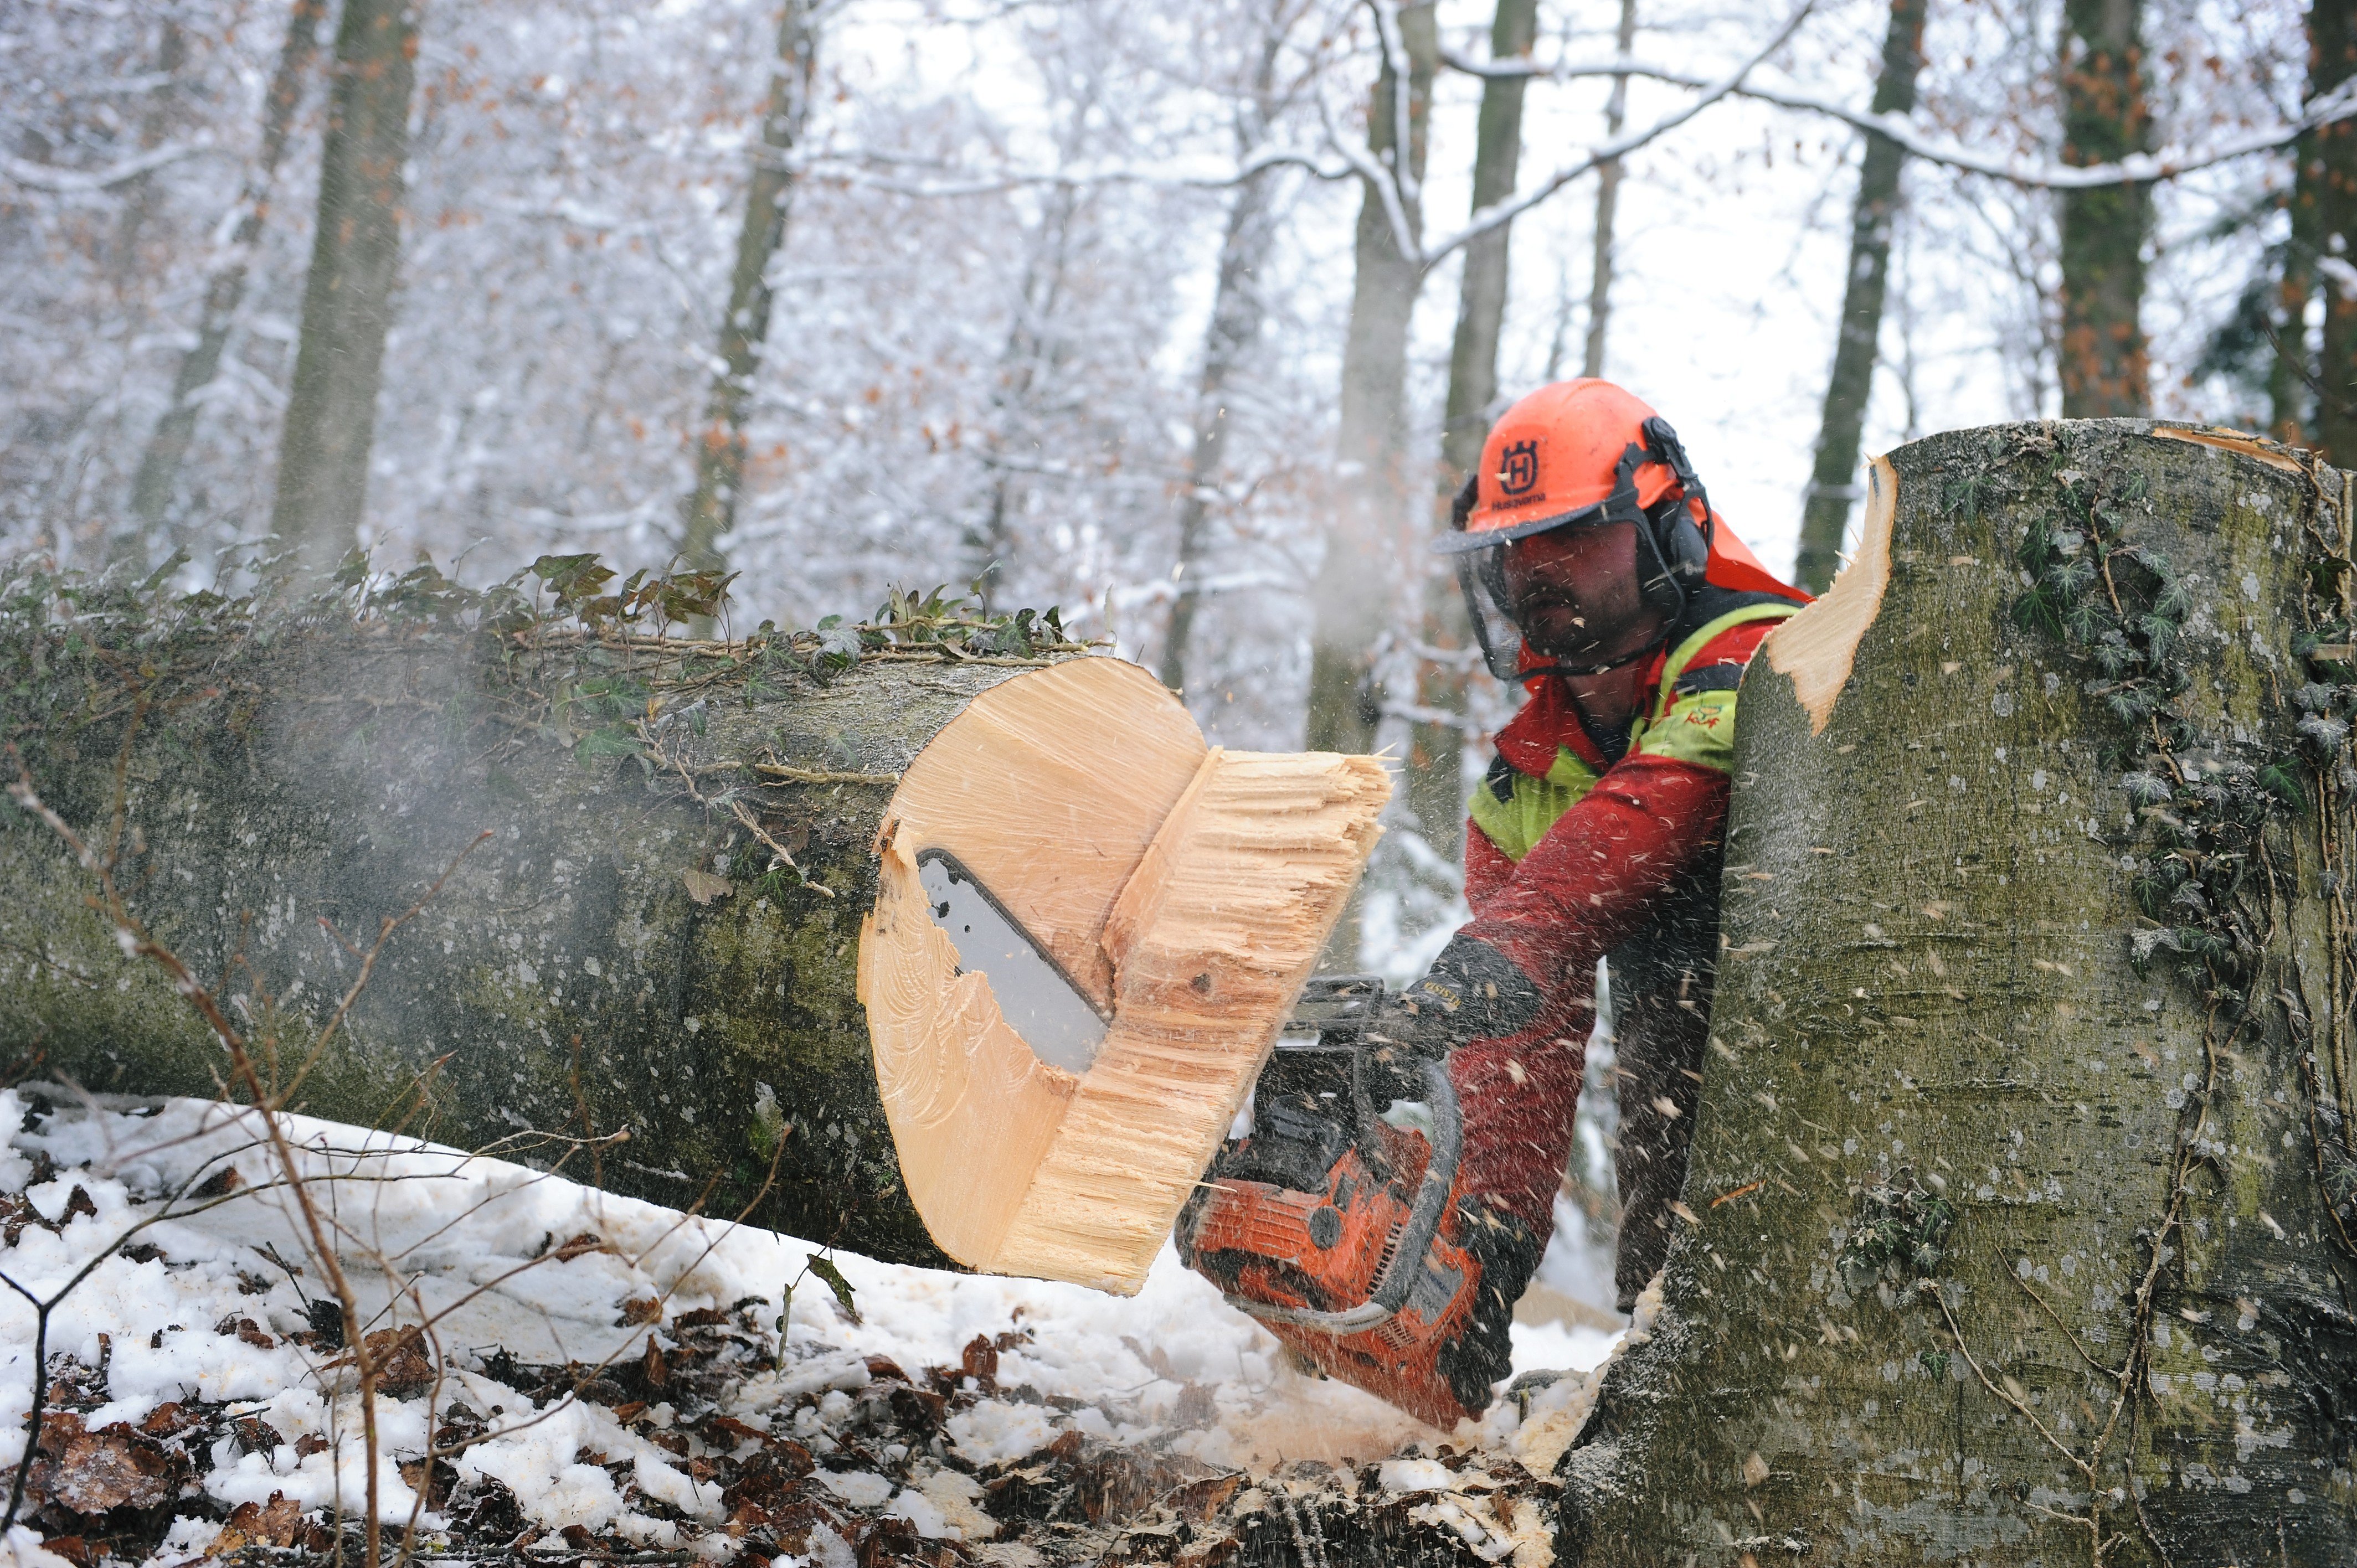 Notfallsituation bei Holzerntearbeiten – schnelle Rettung ist